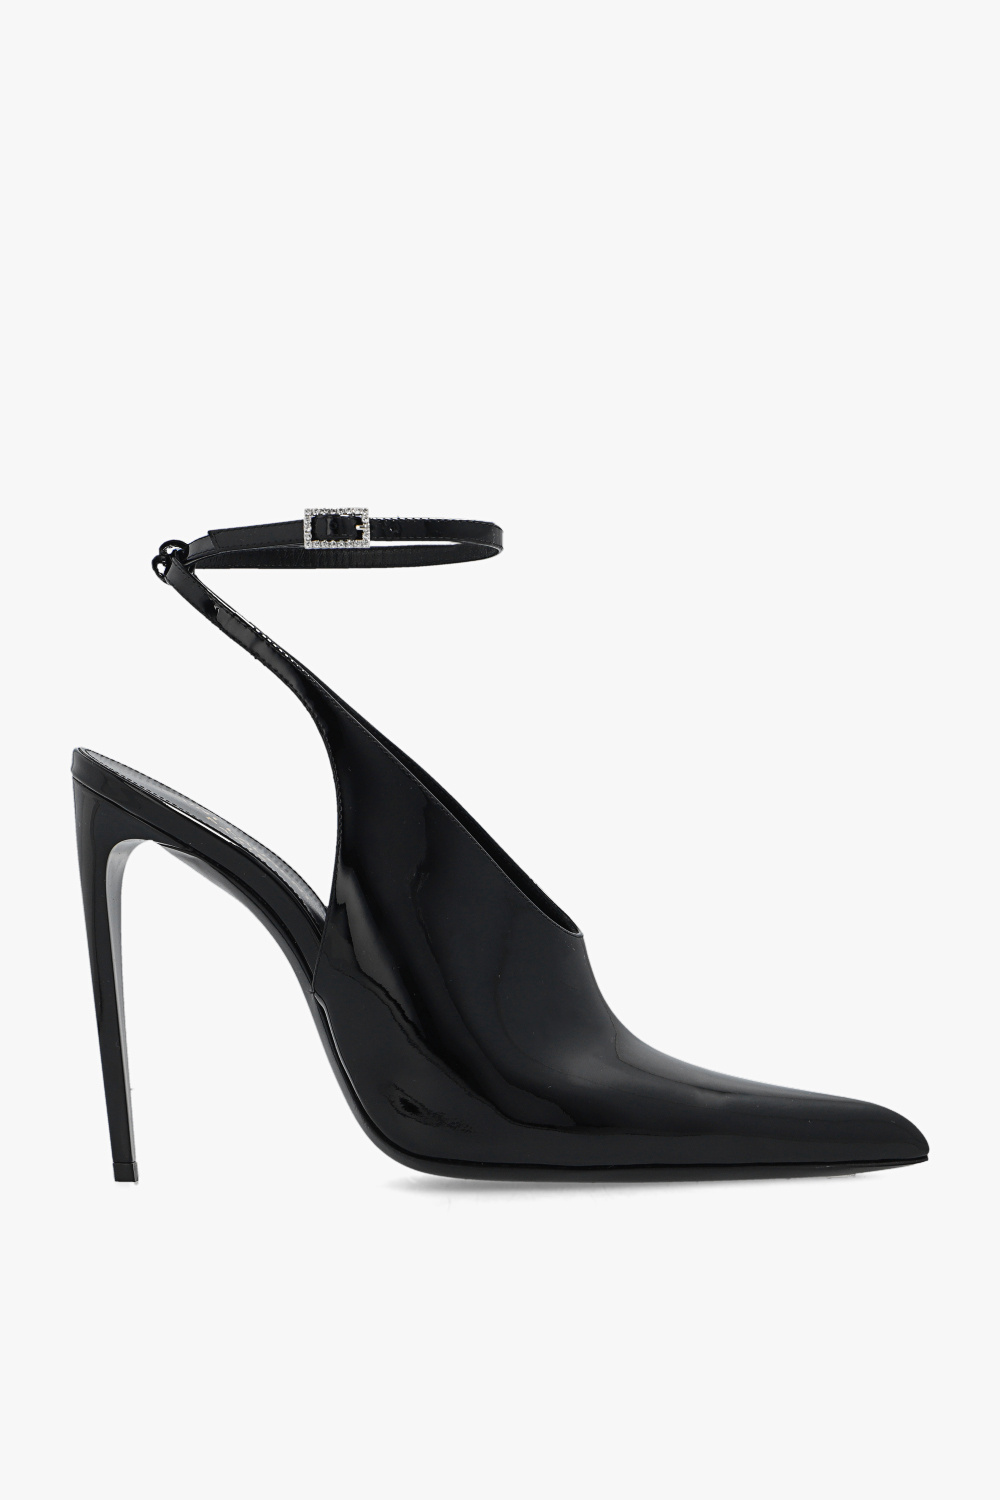 Saint Laurent ‘Pulp’ pumps in patent leather | Women's Shoes | Vitkac